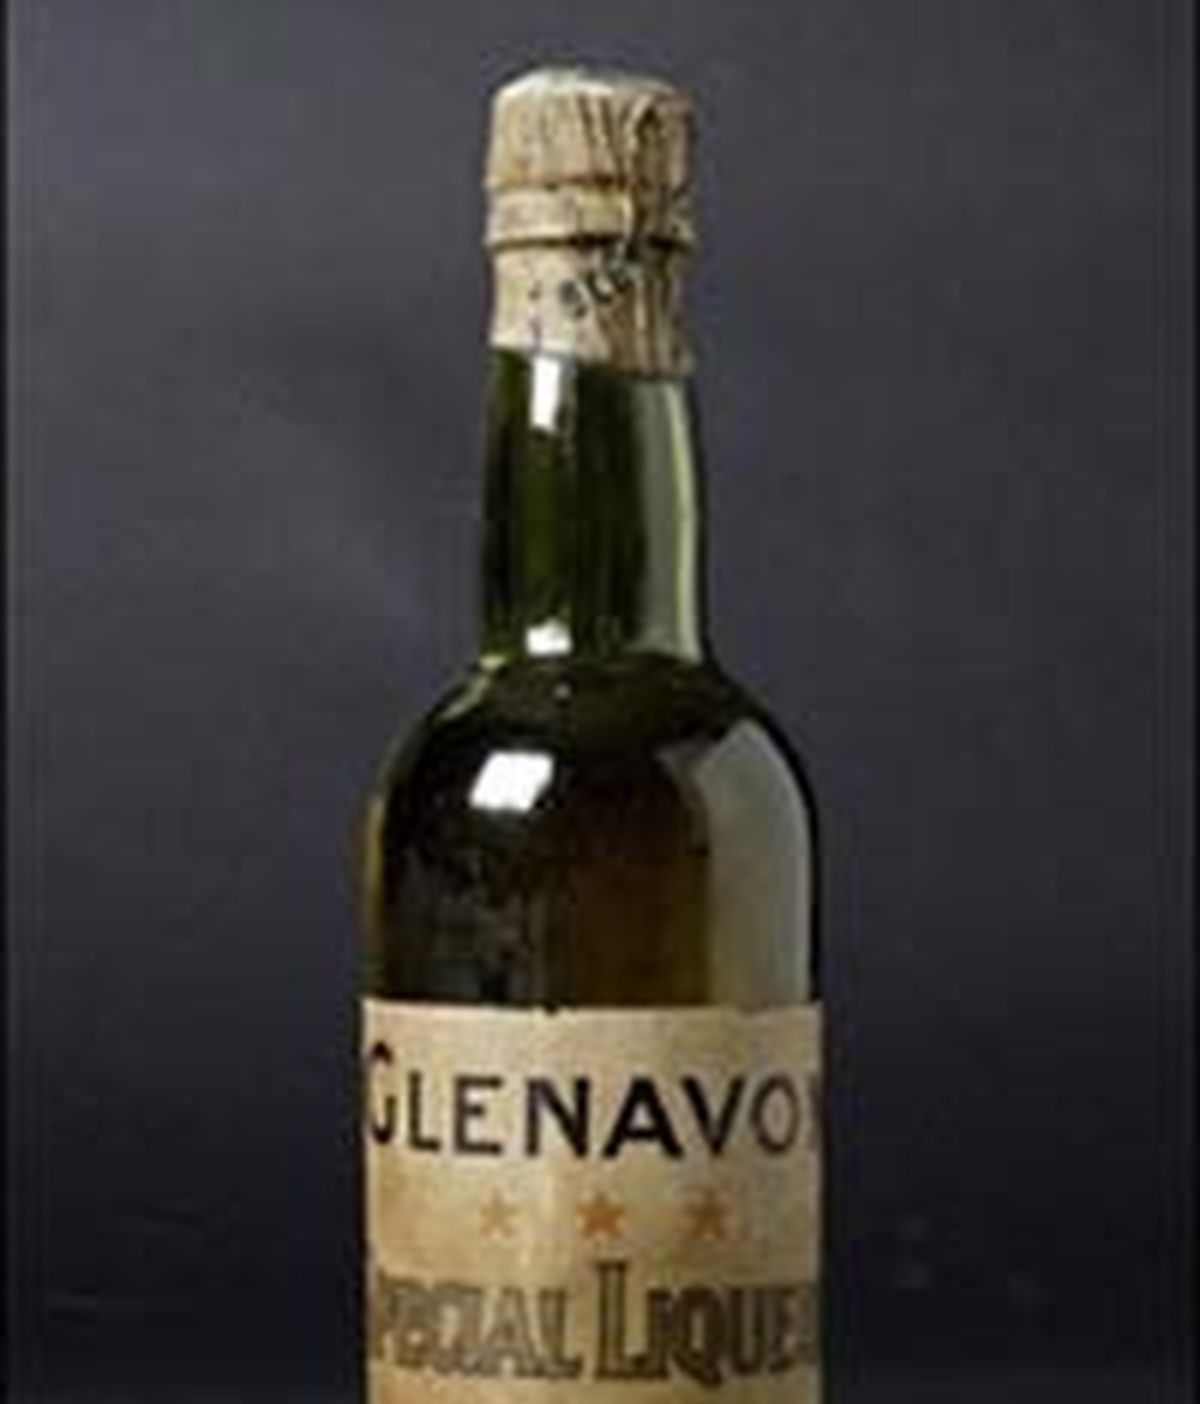 Una de las botellas más antiguas del mundo, adjudicada en una subasta por 21.990 euros. Foto: elporvenir.com